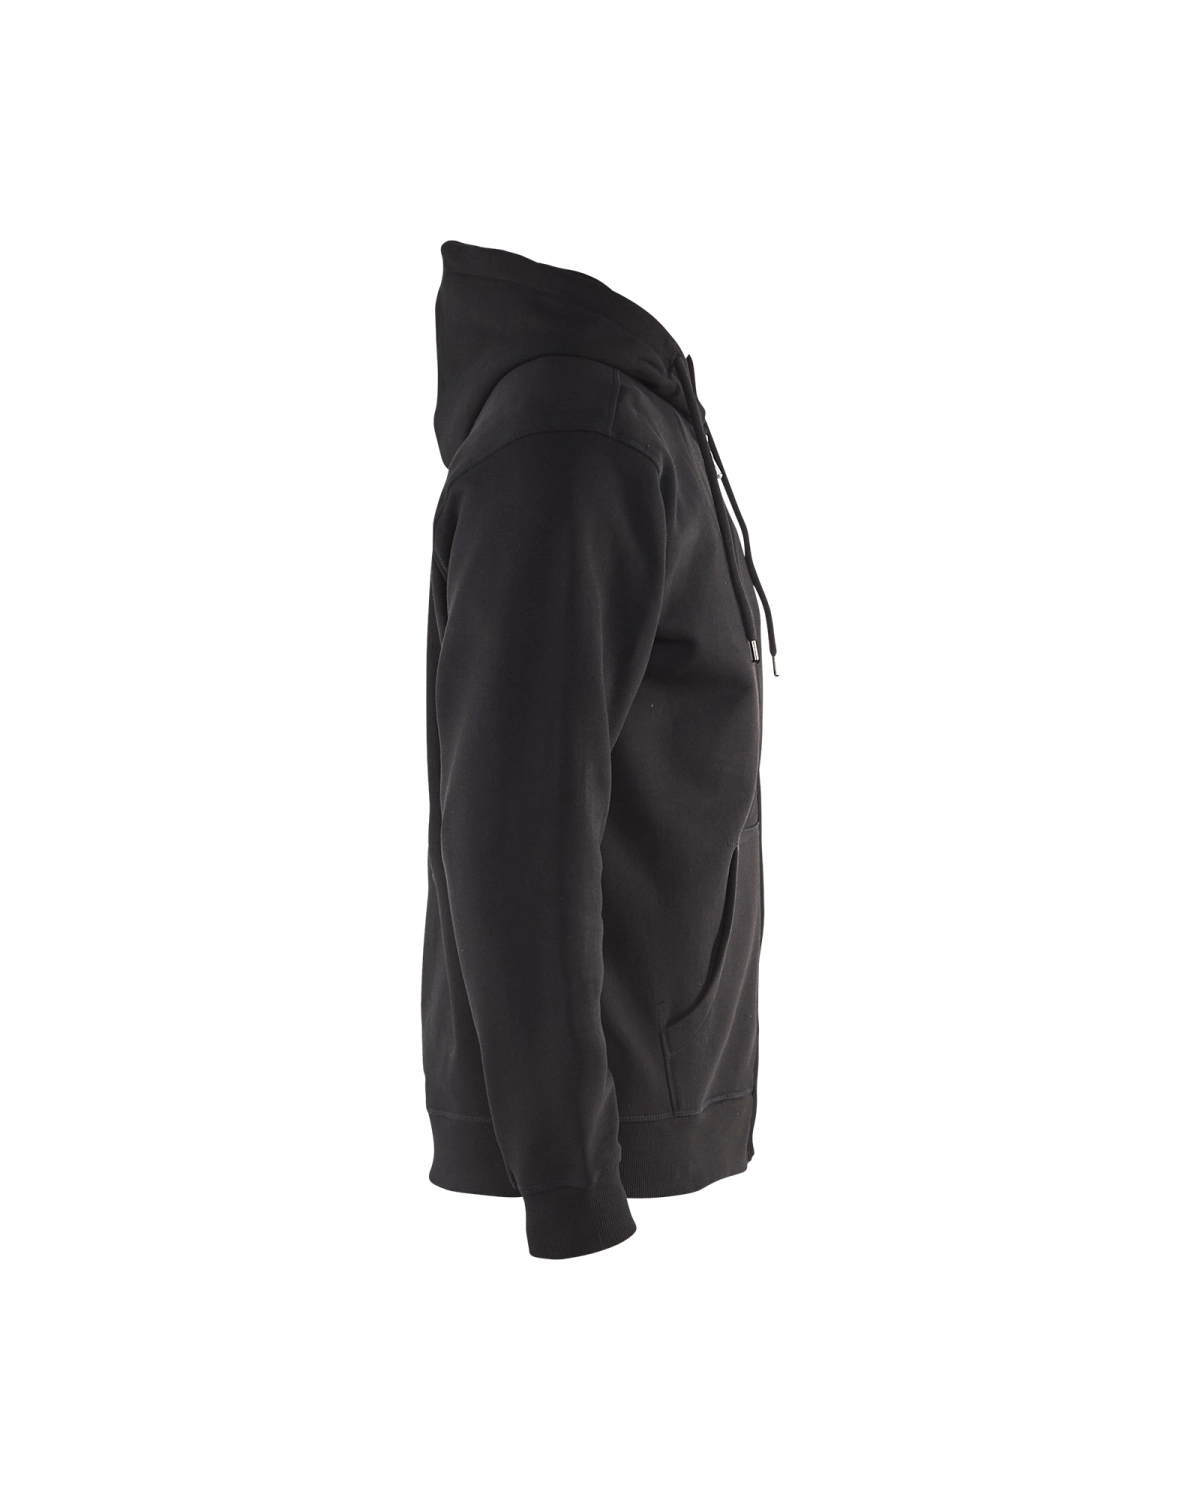 Blåkläder 3366 Hooded sweatshirt - zwart - M